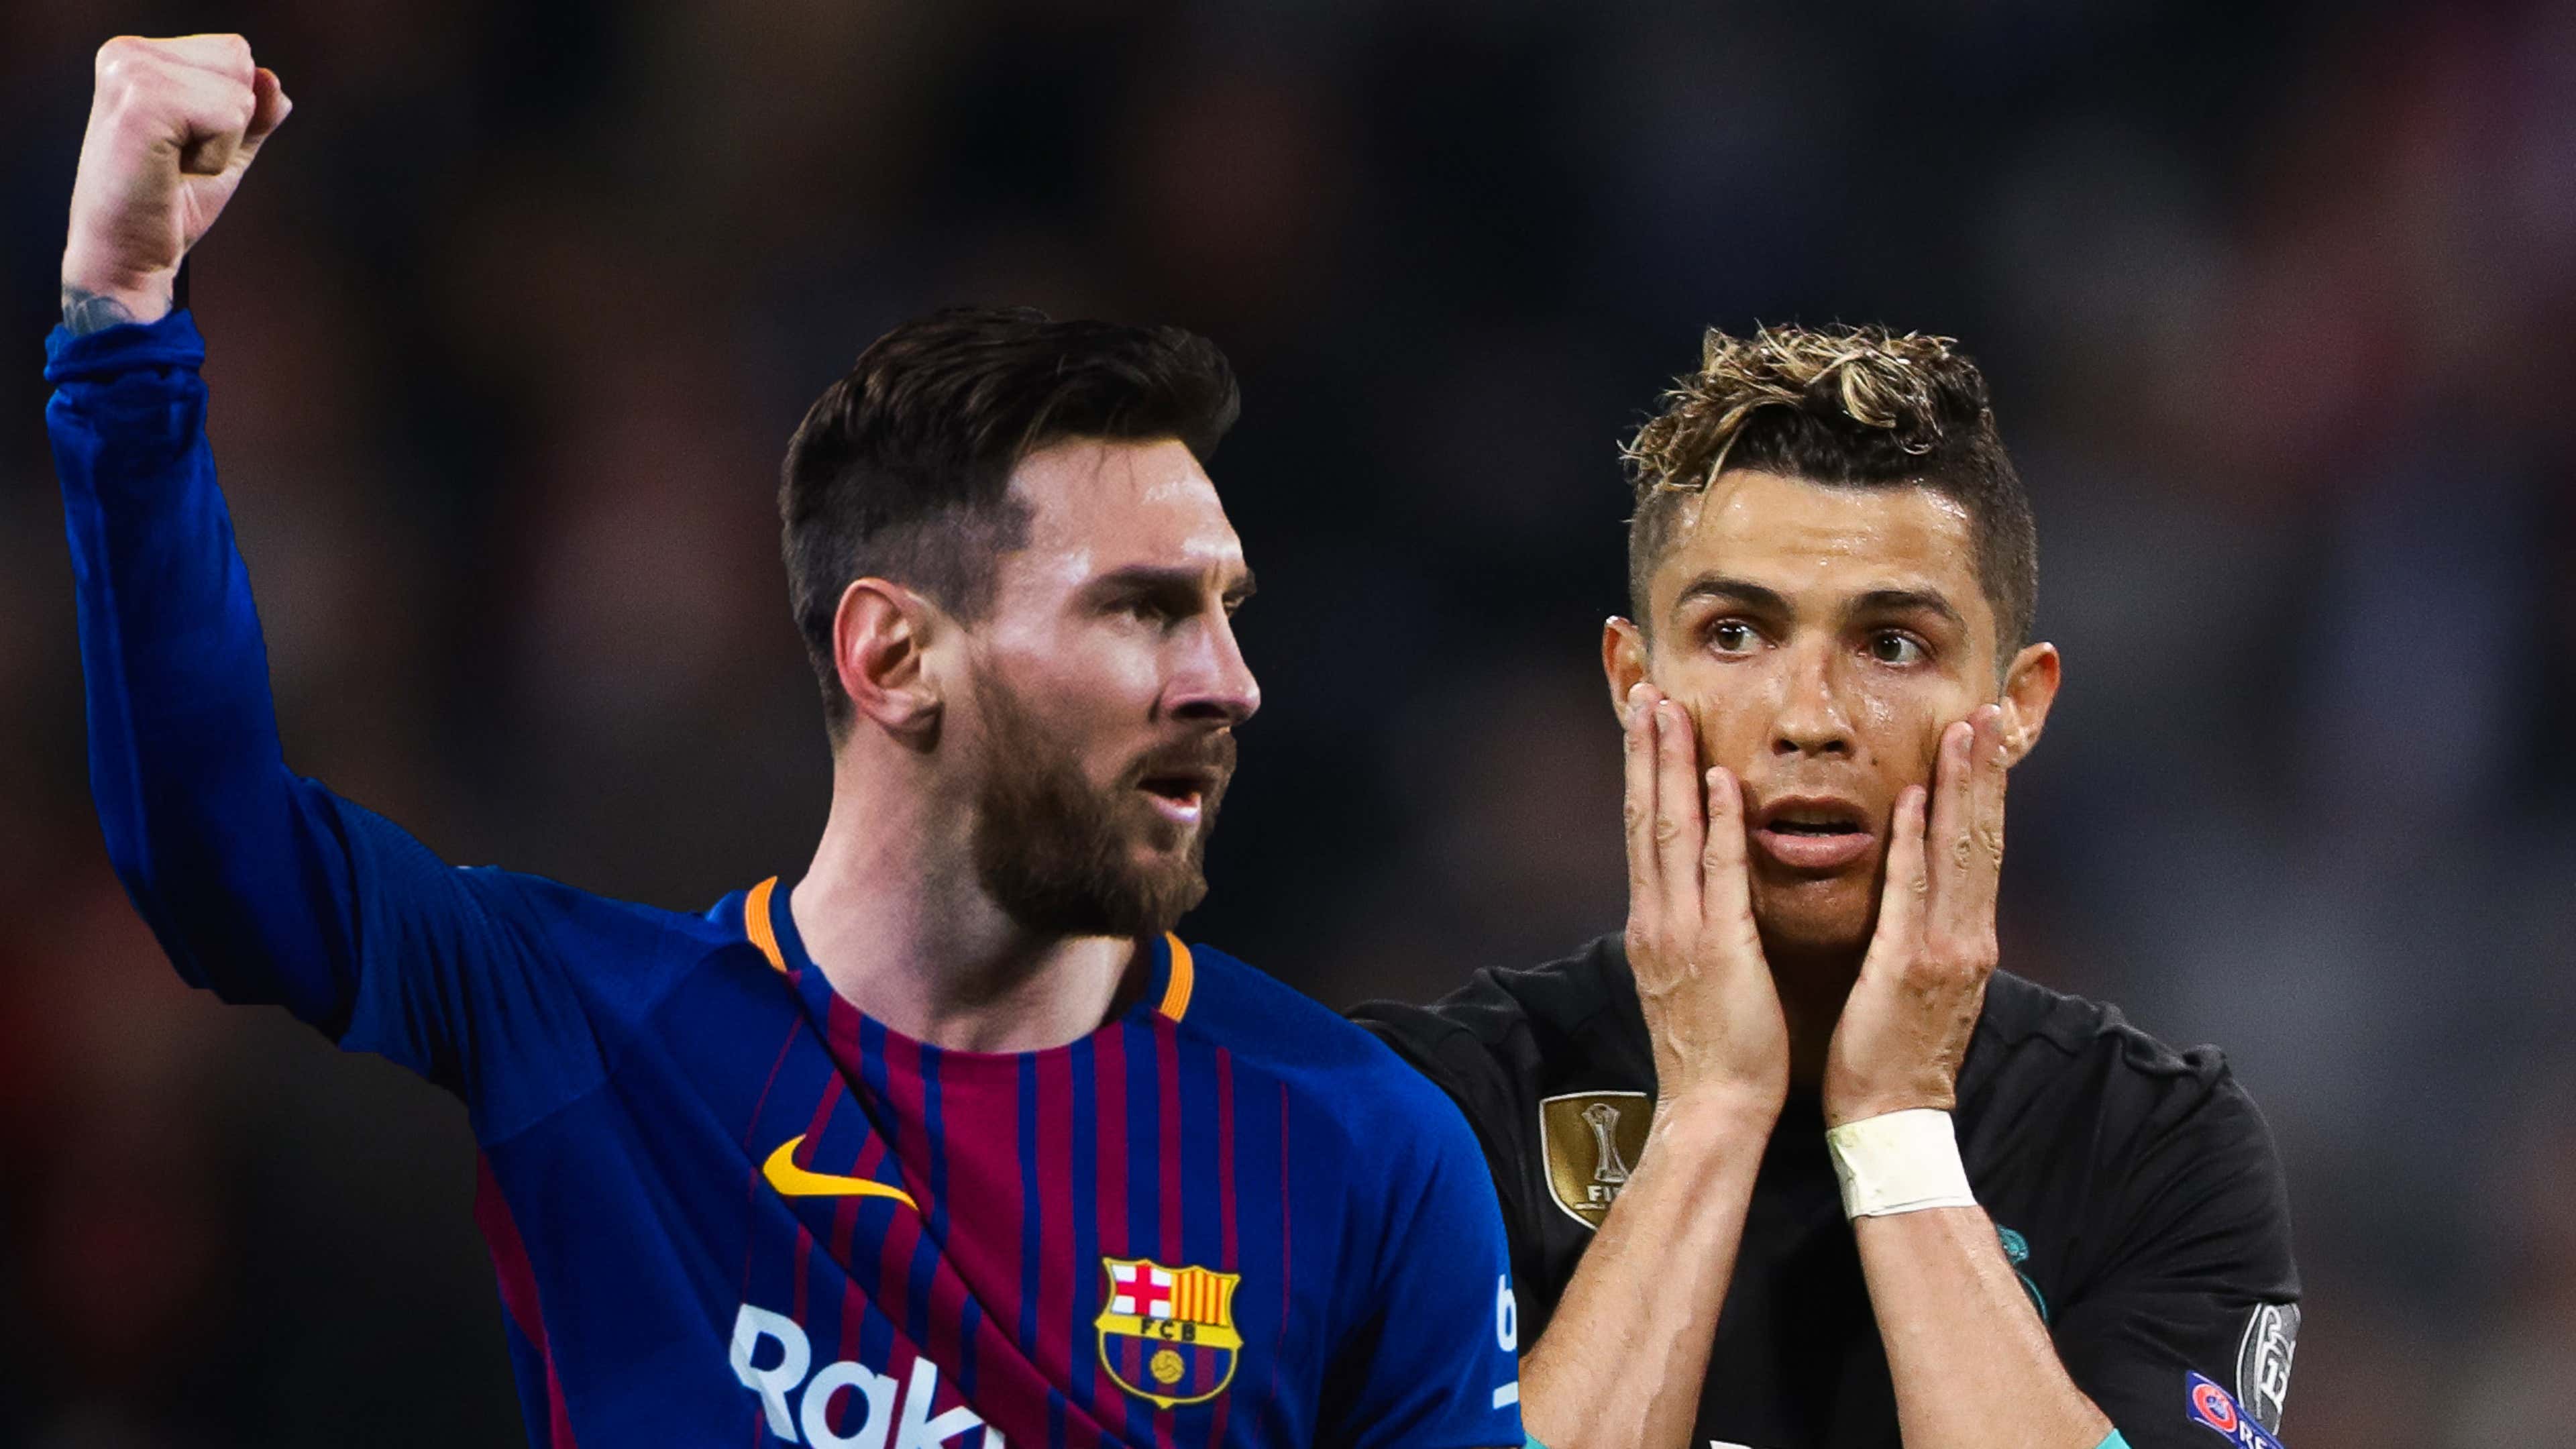 Barcelona e Real Madrid se enfrentam sem Messi e CR7 após quase 11